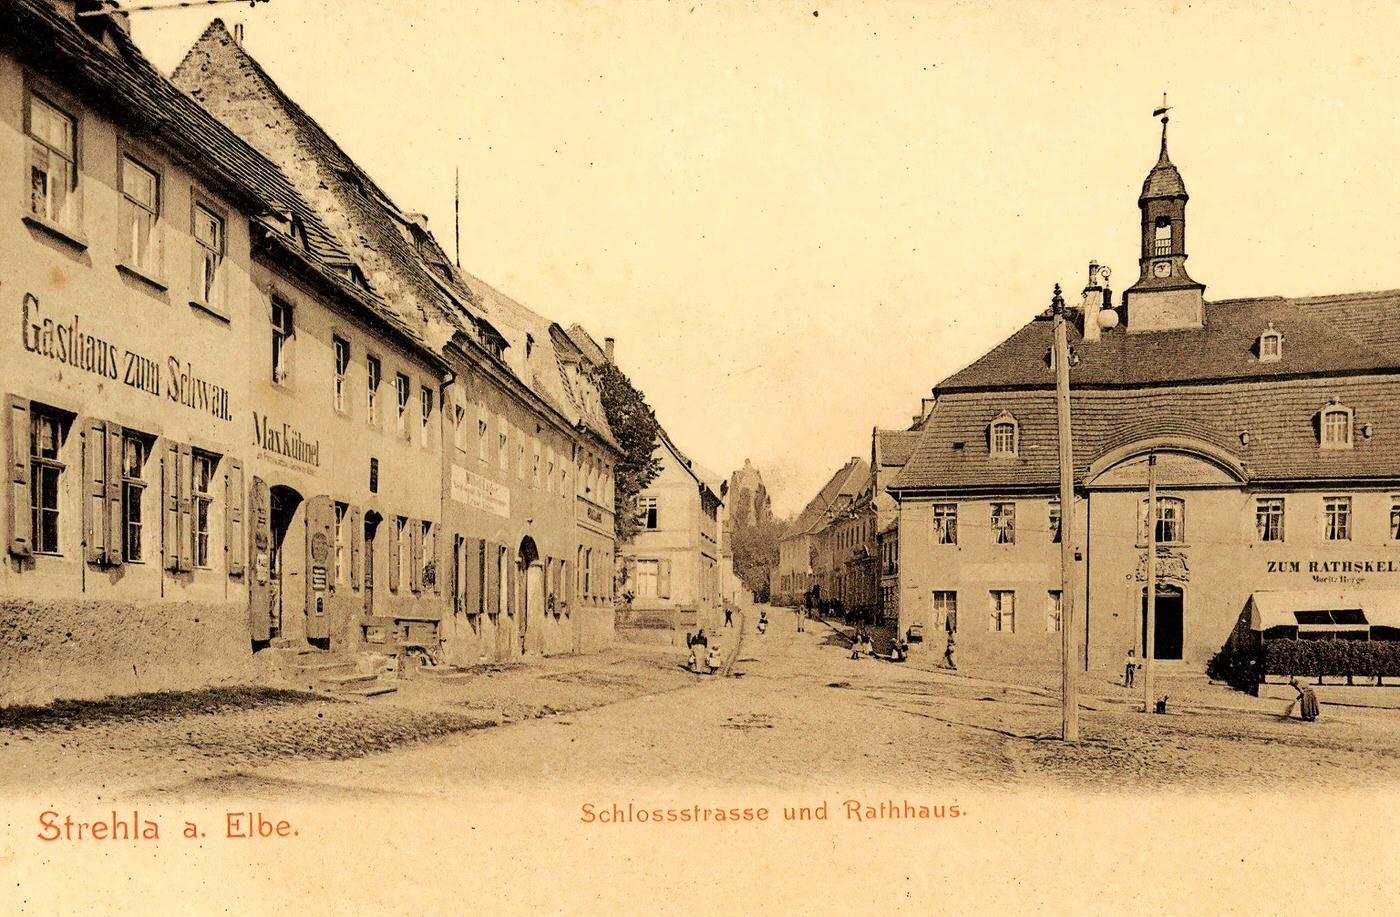 Town halls in Landkreis Meissen, Restaurants, Germany, 1903.